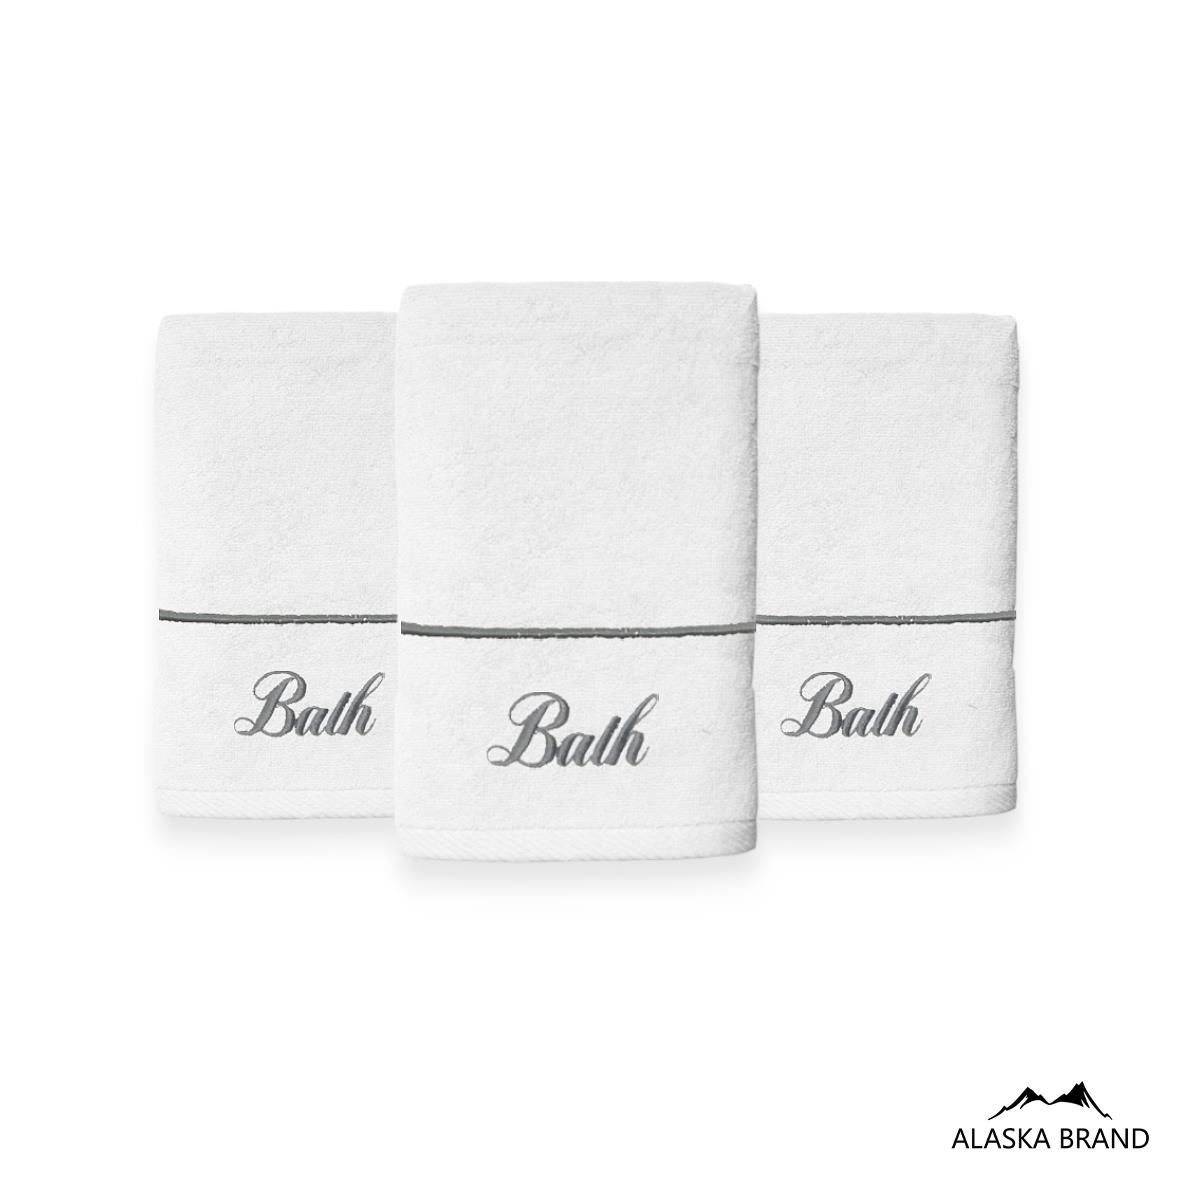 מגבת ידיים רקומה יוקרתית 100% כותנה דגם - הלנה Bath לבן כסף